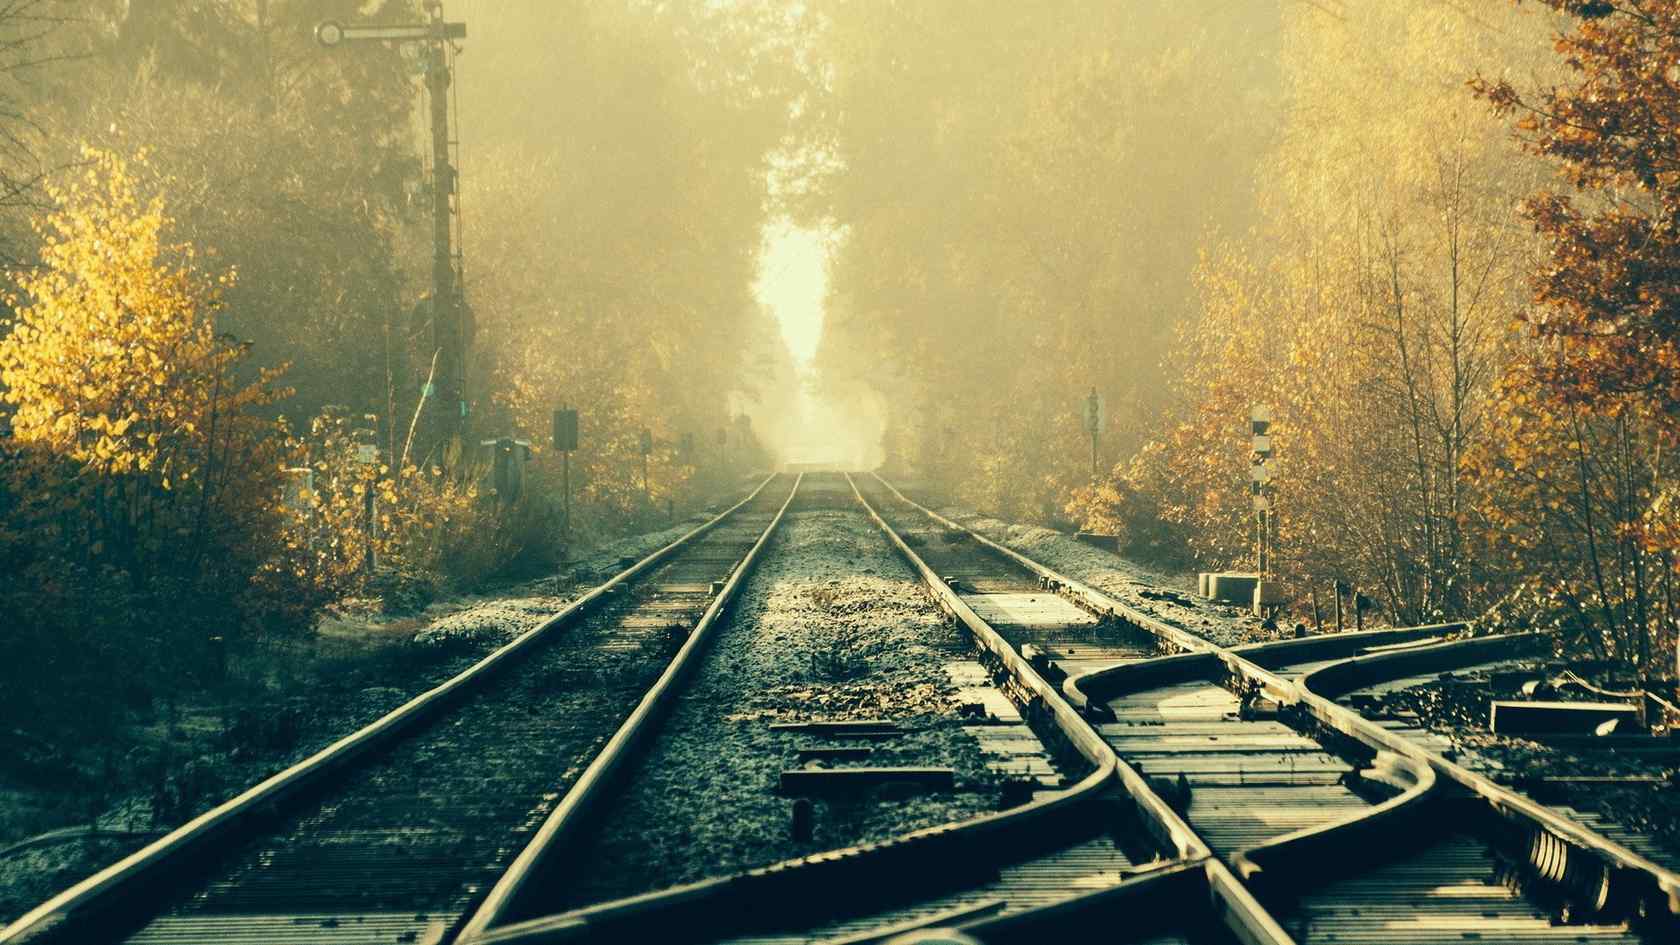 林间的火车轨道唯美风景图片